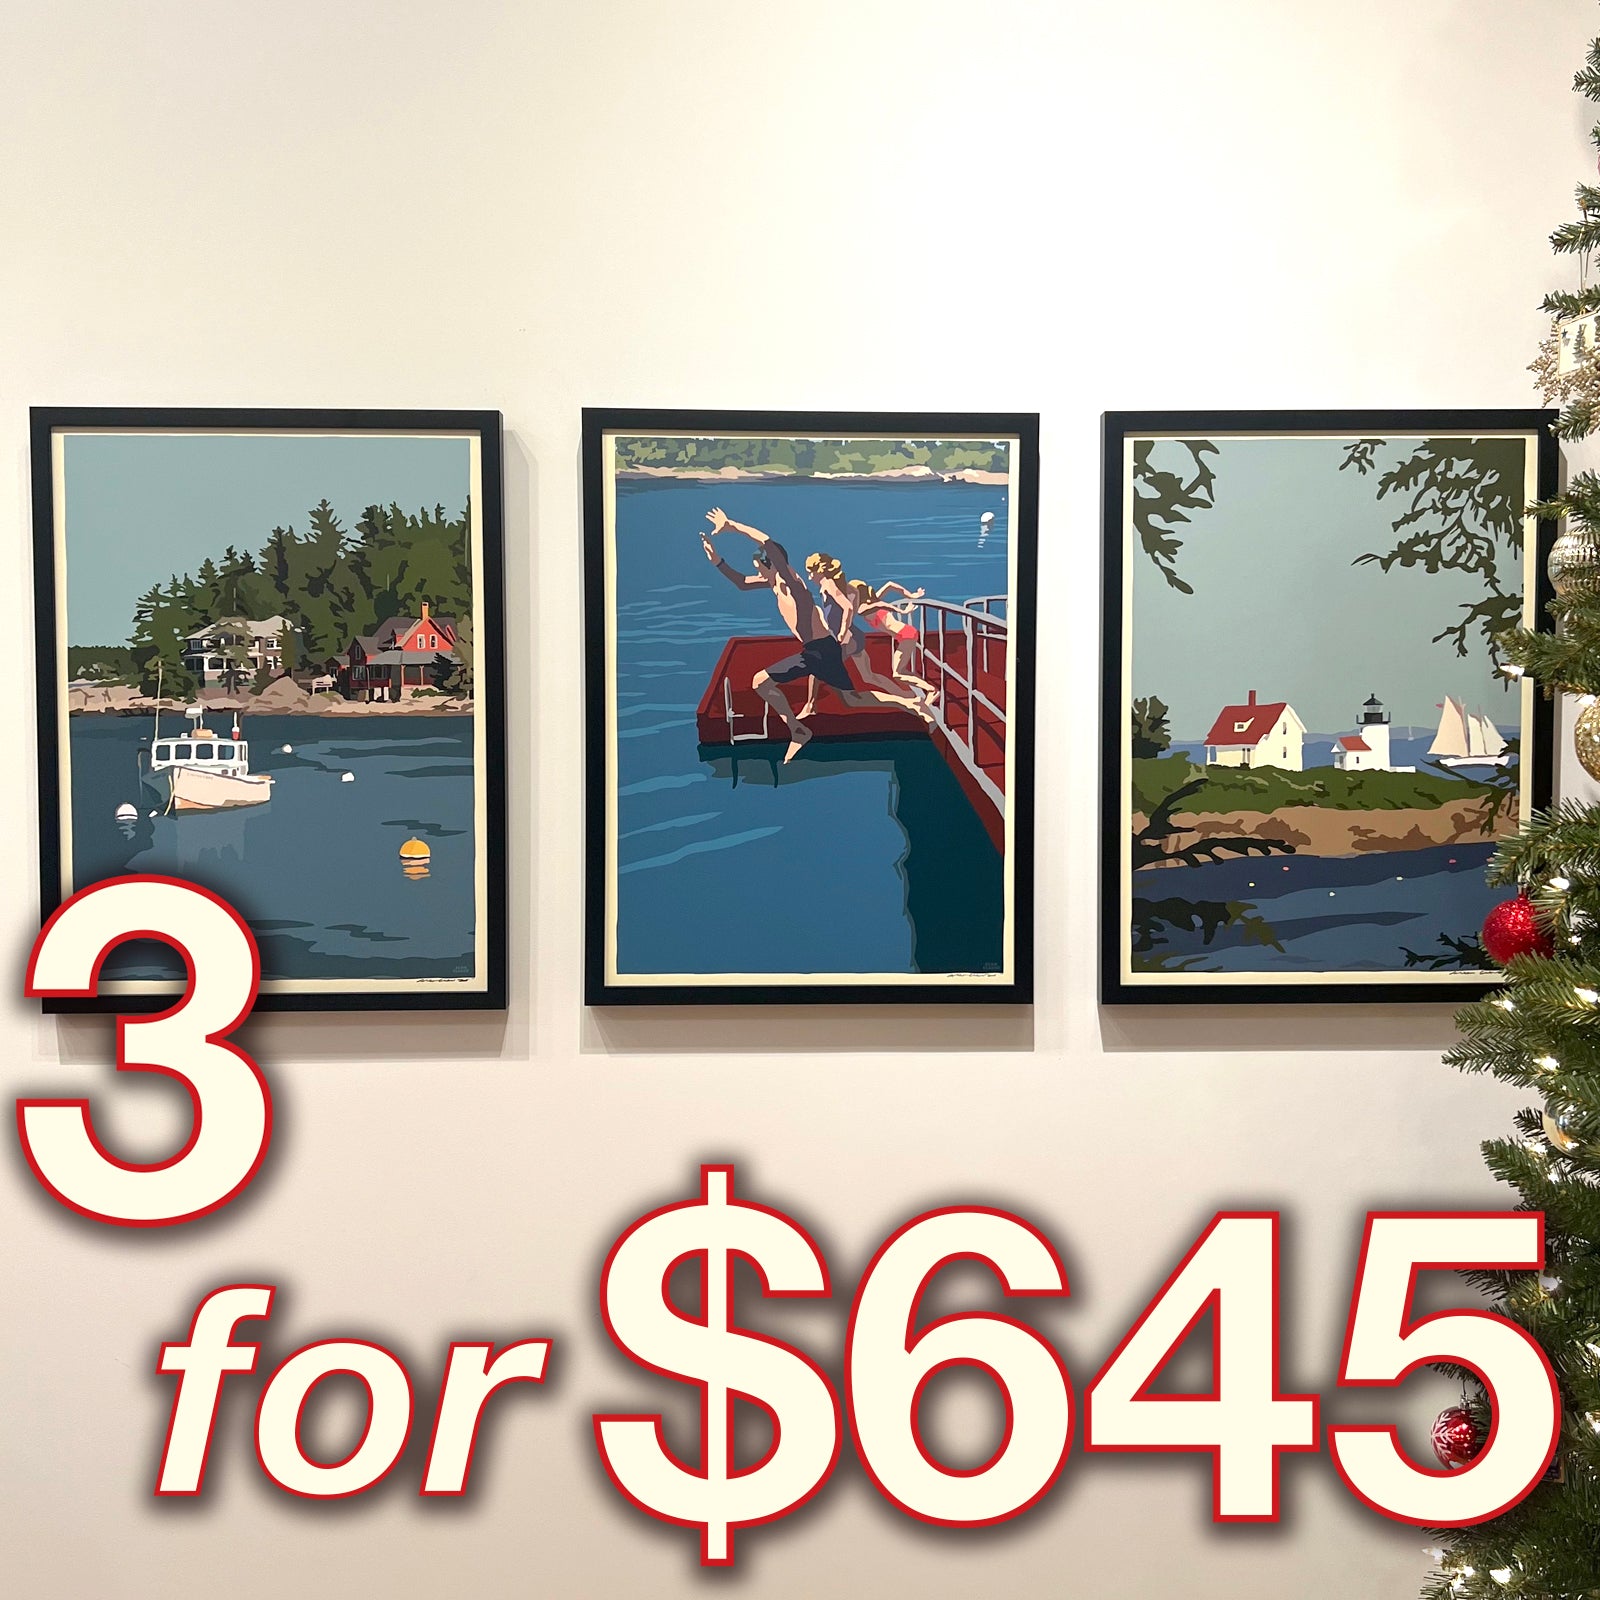 3 FRAMED 18x24's Prints for $645